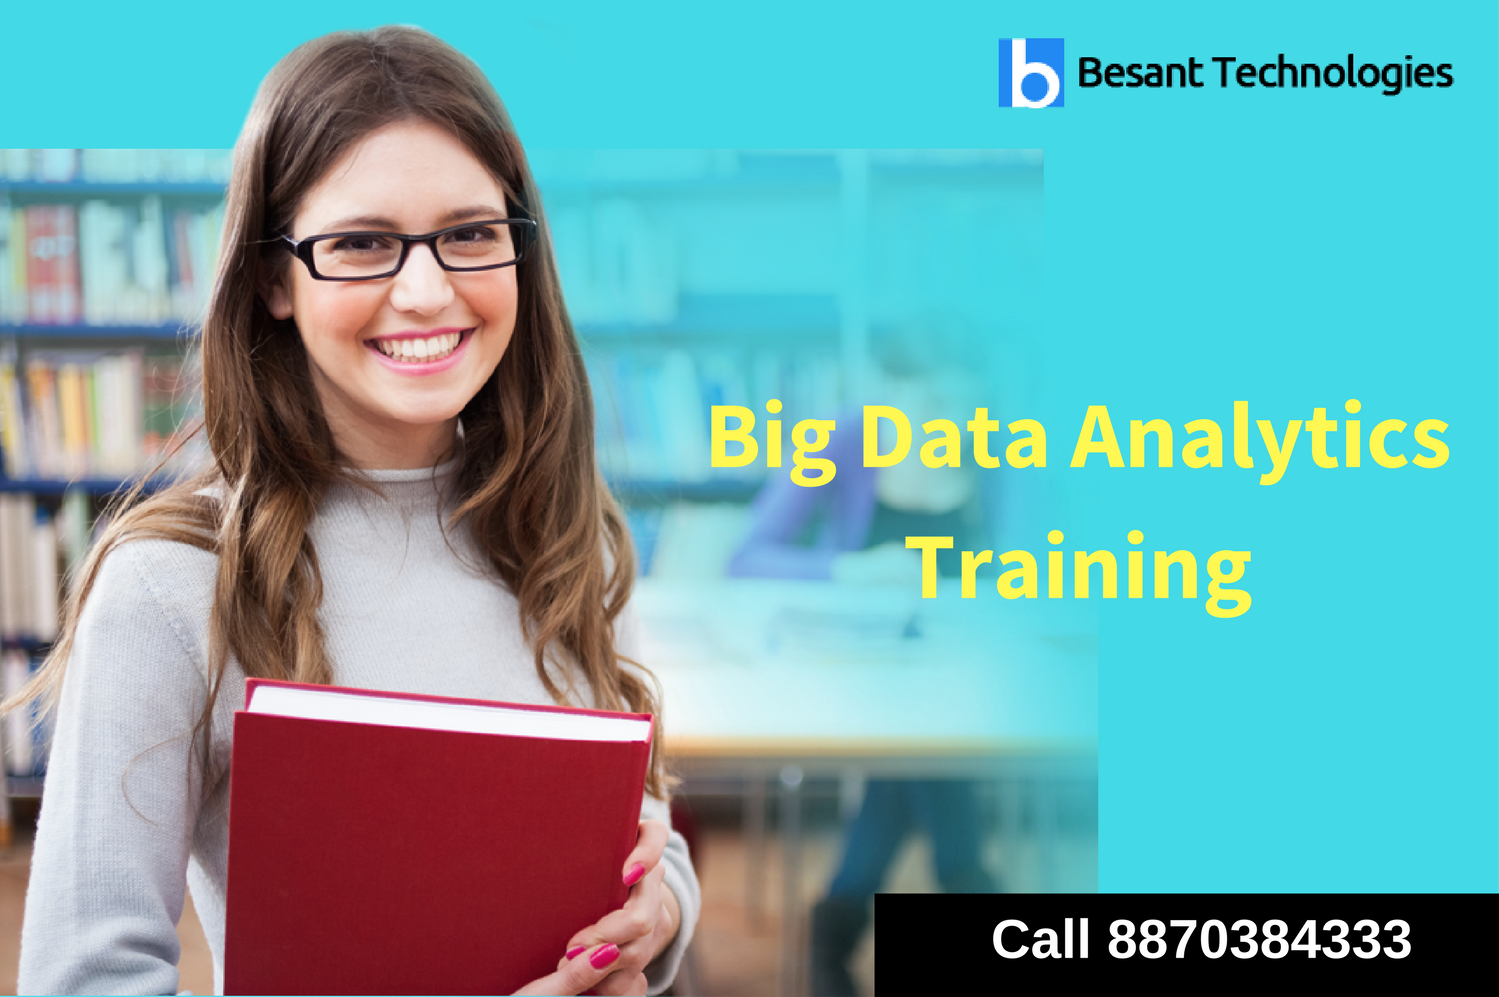 Big Data Analytics Training in Chennai